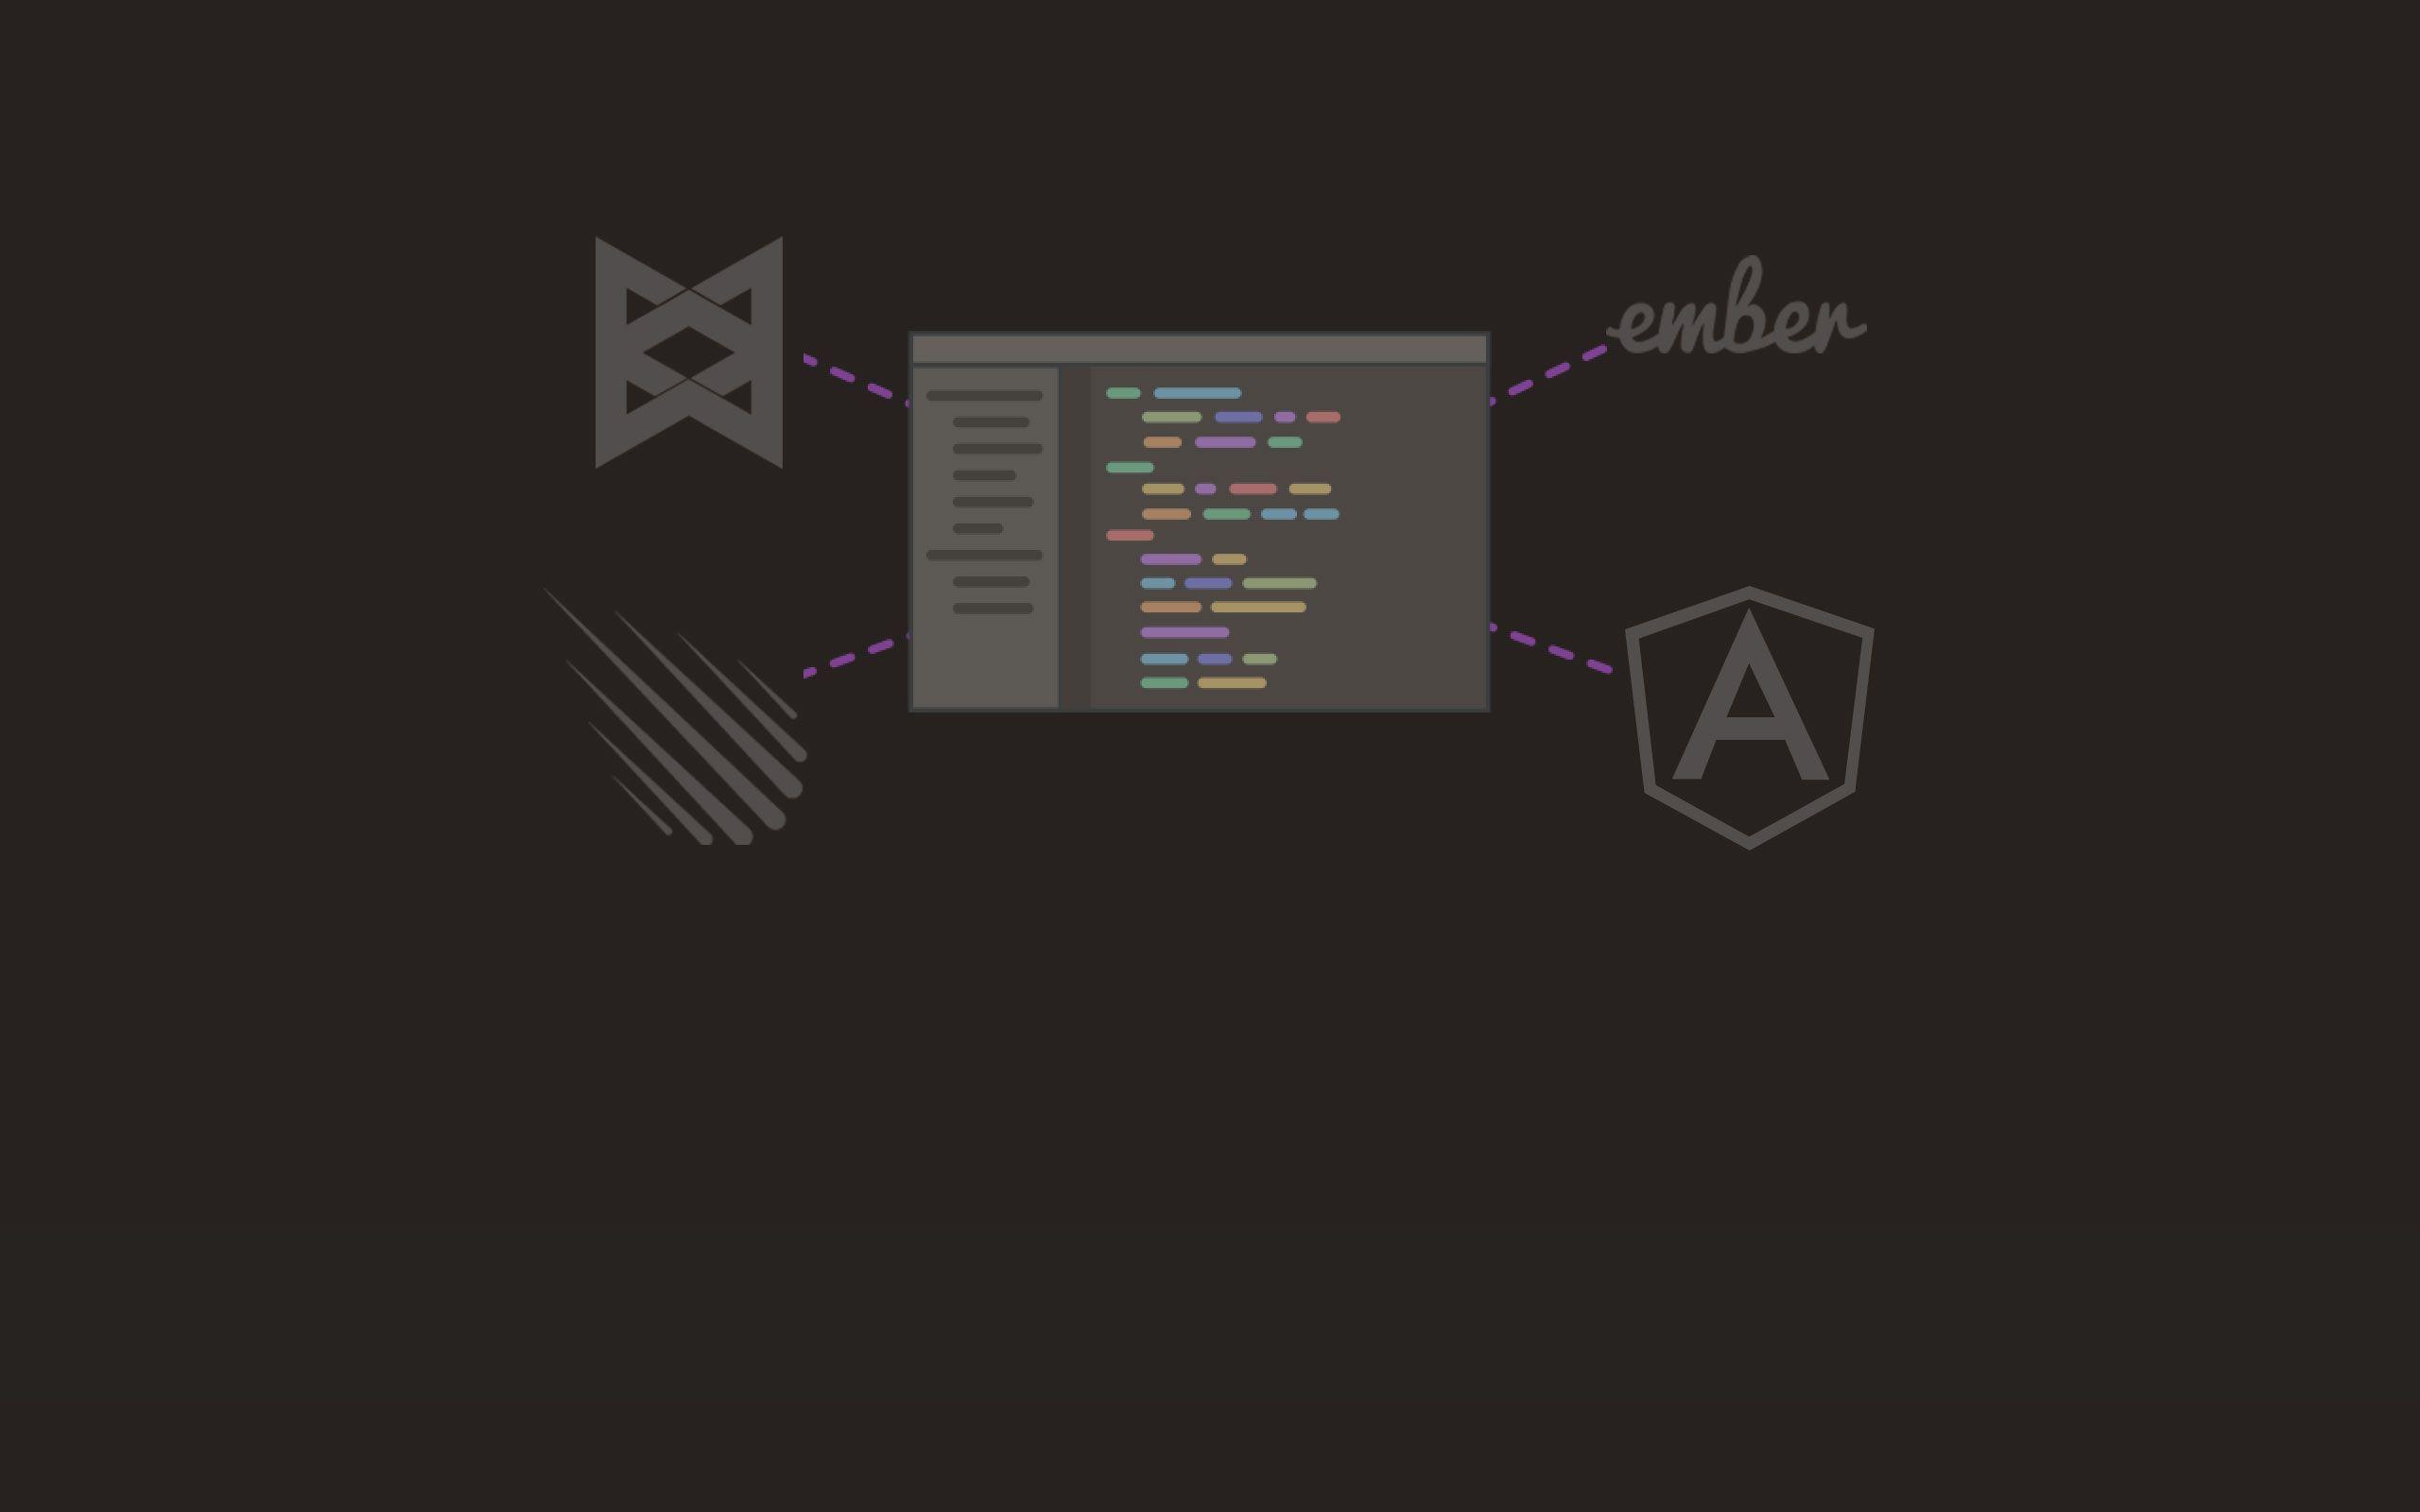 Wallpaper Javascript Programming by artgh on DeviantArt